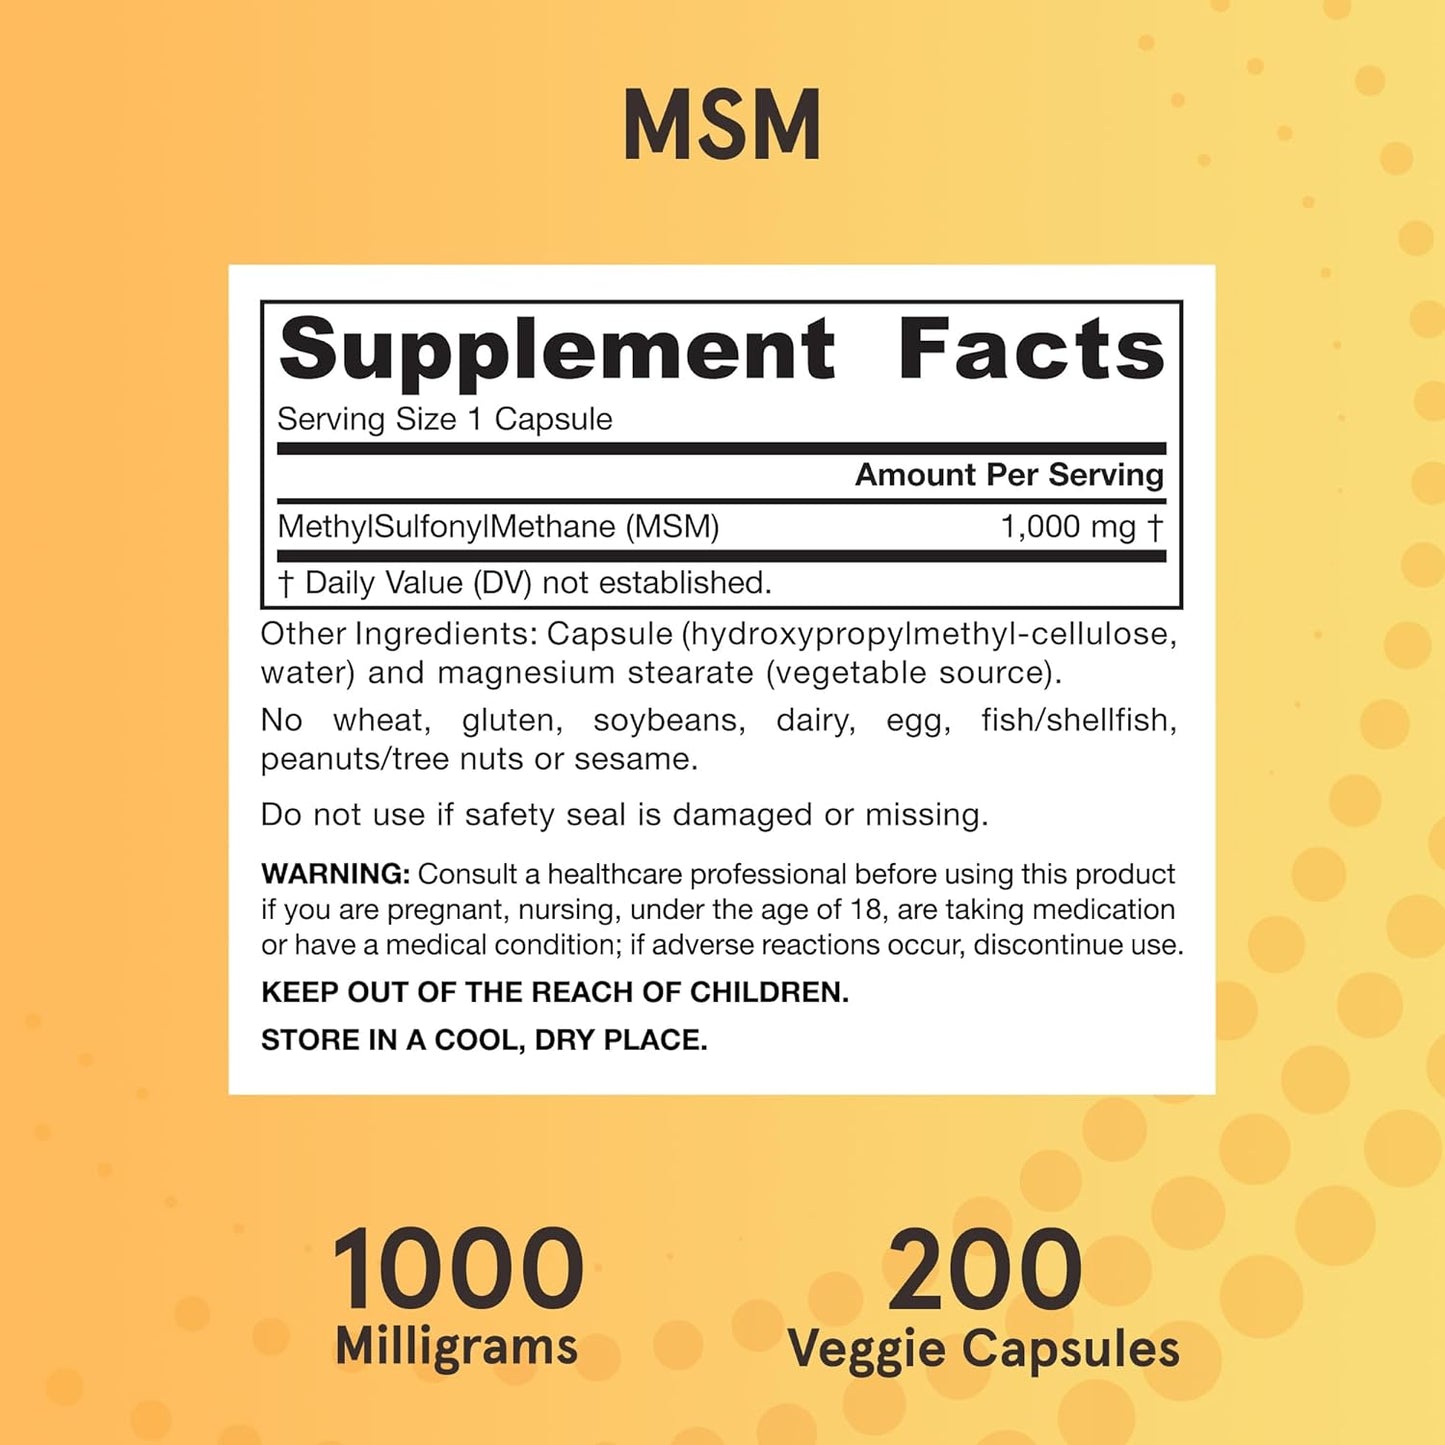 Jarrow MSM - Joints Supplement